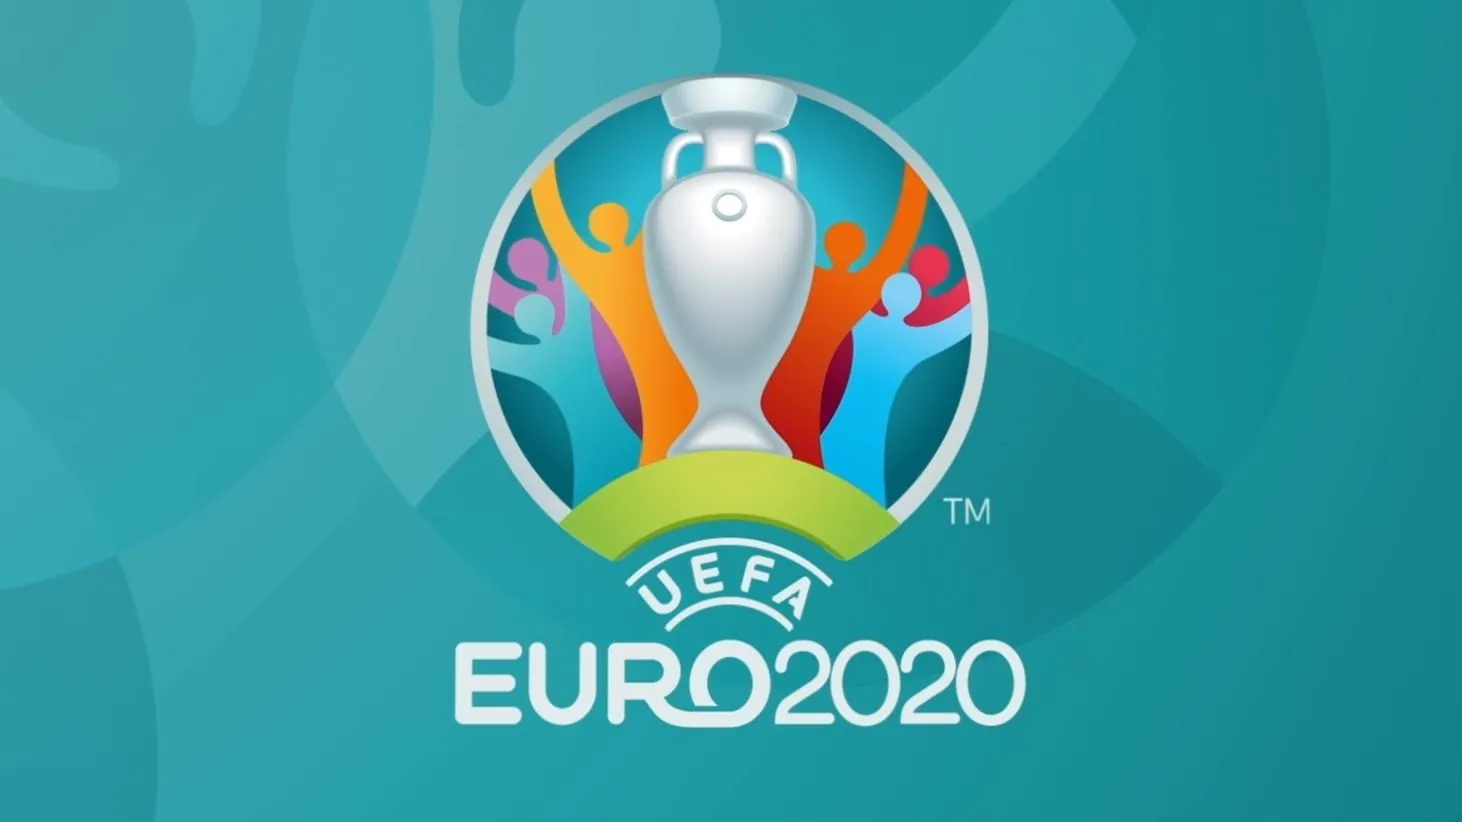 EURO 2020 : A suivre en direct et gratuitement sur ViàATV du 11 juin au 11 juillet 2021